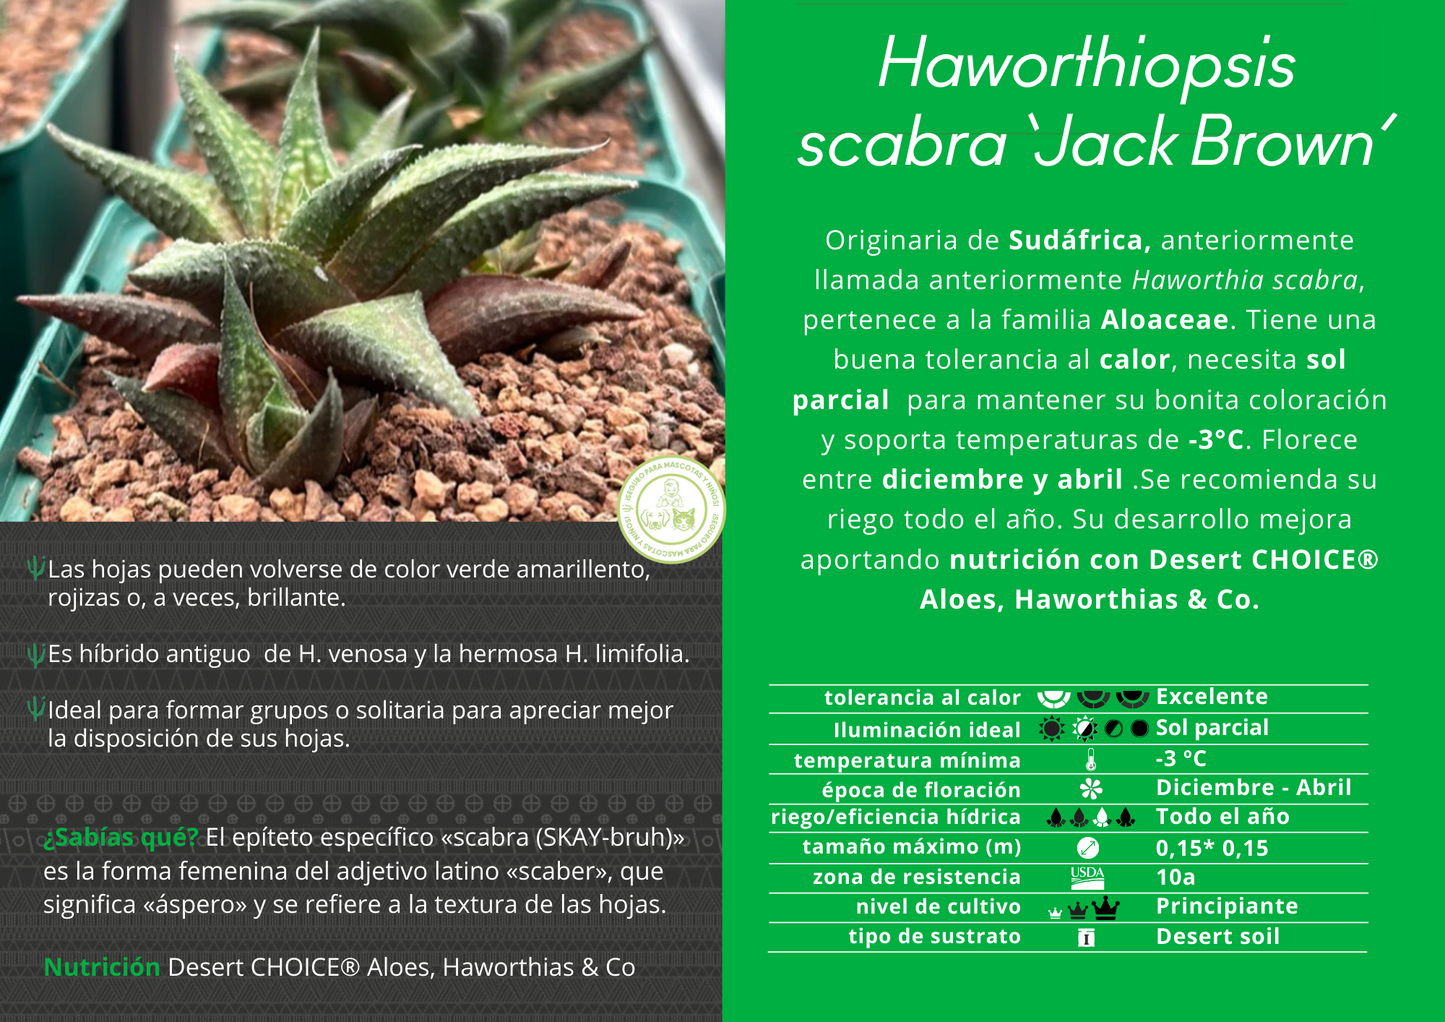 Haworthiopsis scabra 'Jack Brown'